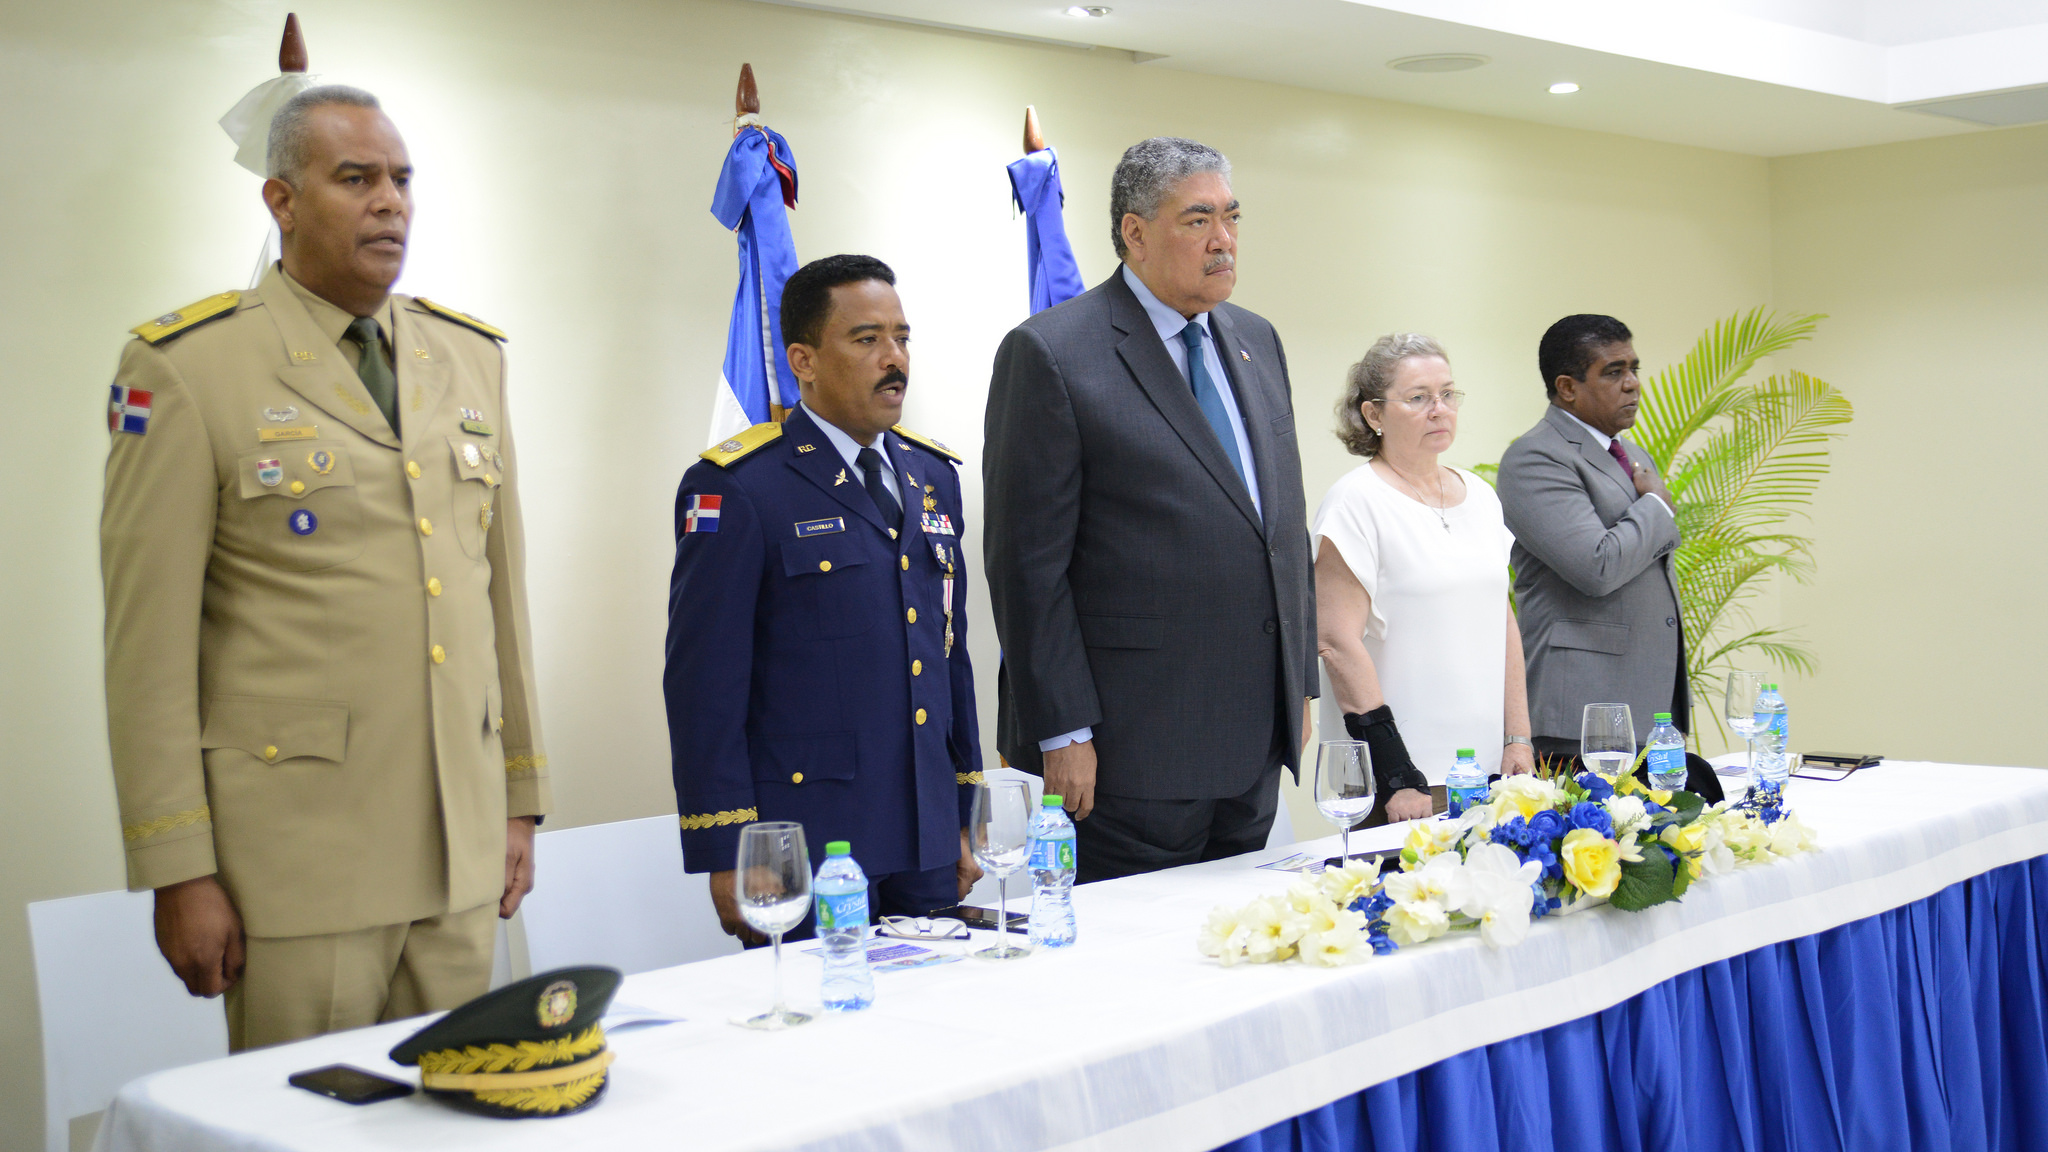 REPÚBLICA DOMINICANA: Ministerio para Políticas de Integración Regional lleva curso Raíces Históricas al CESAC